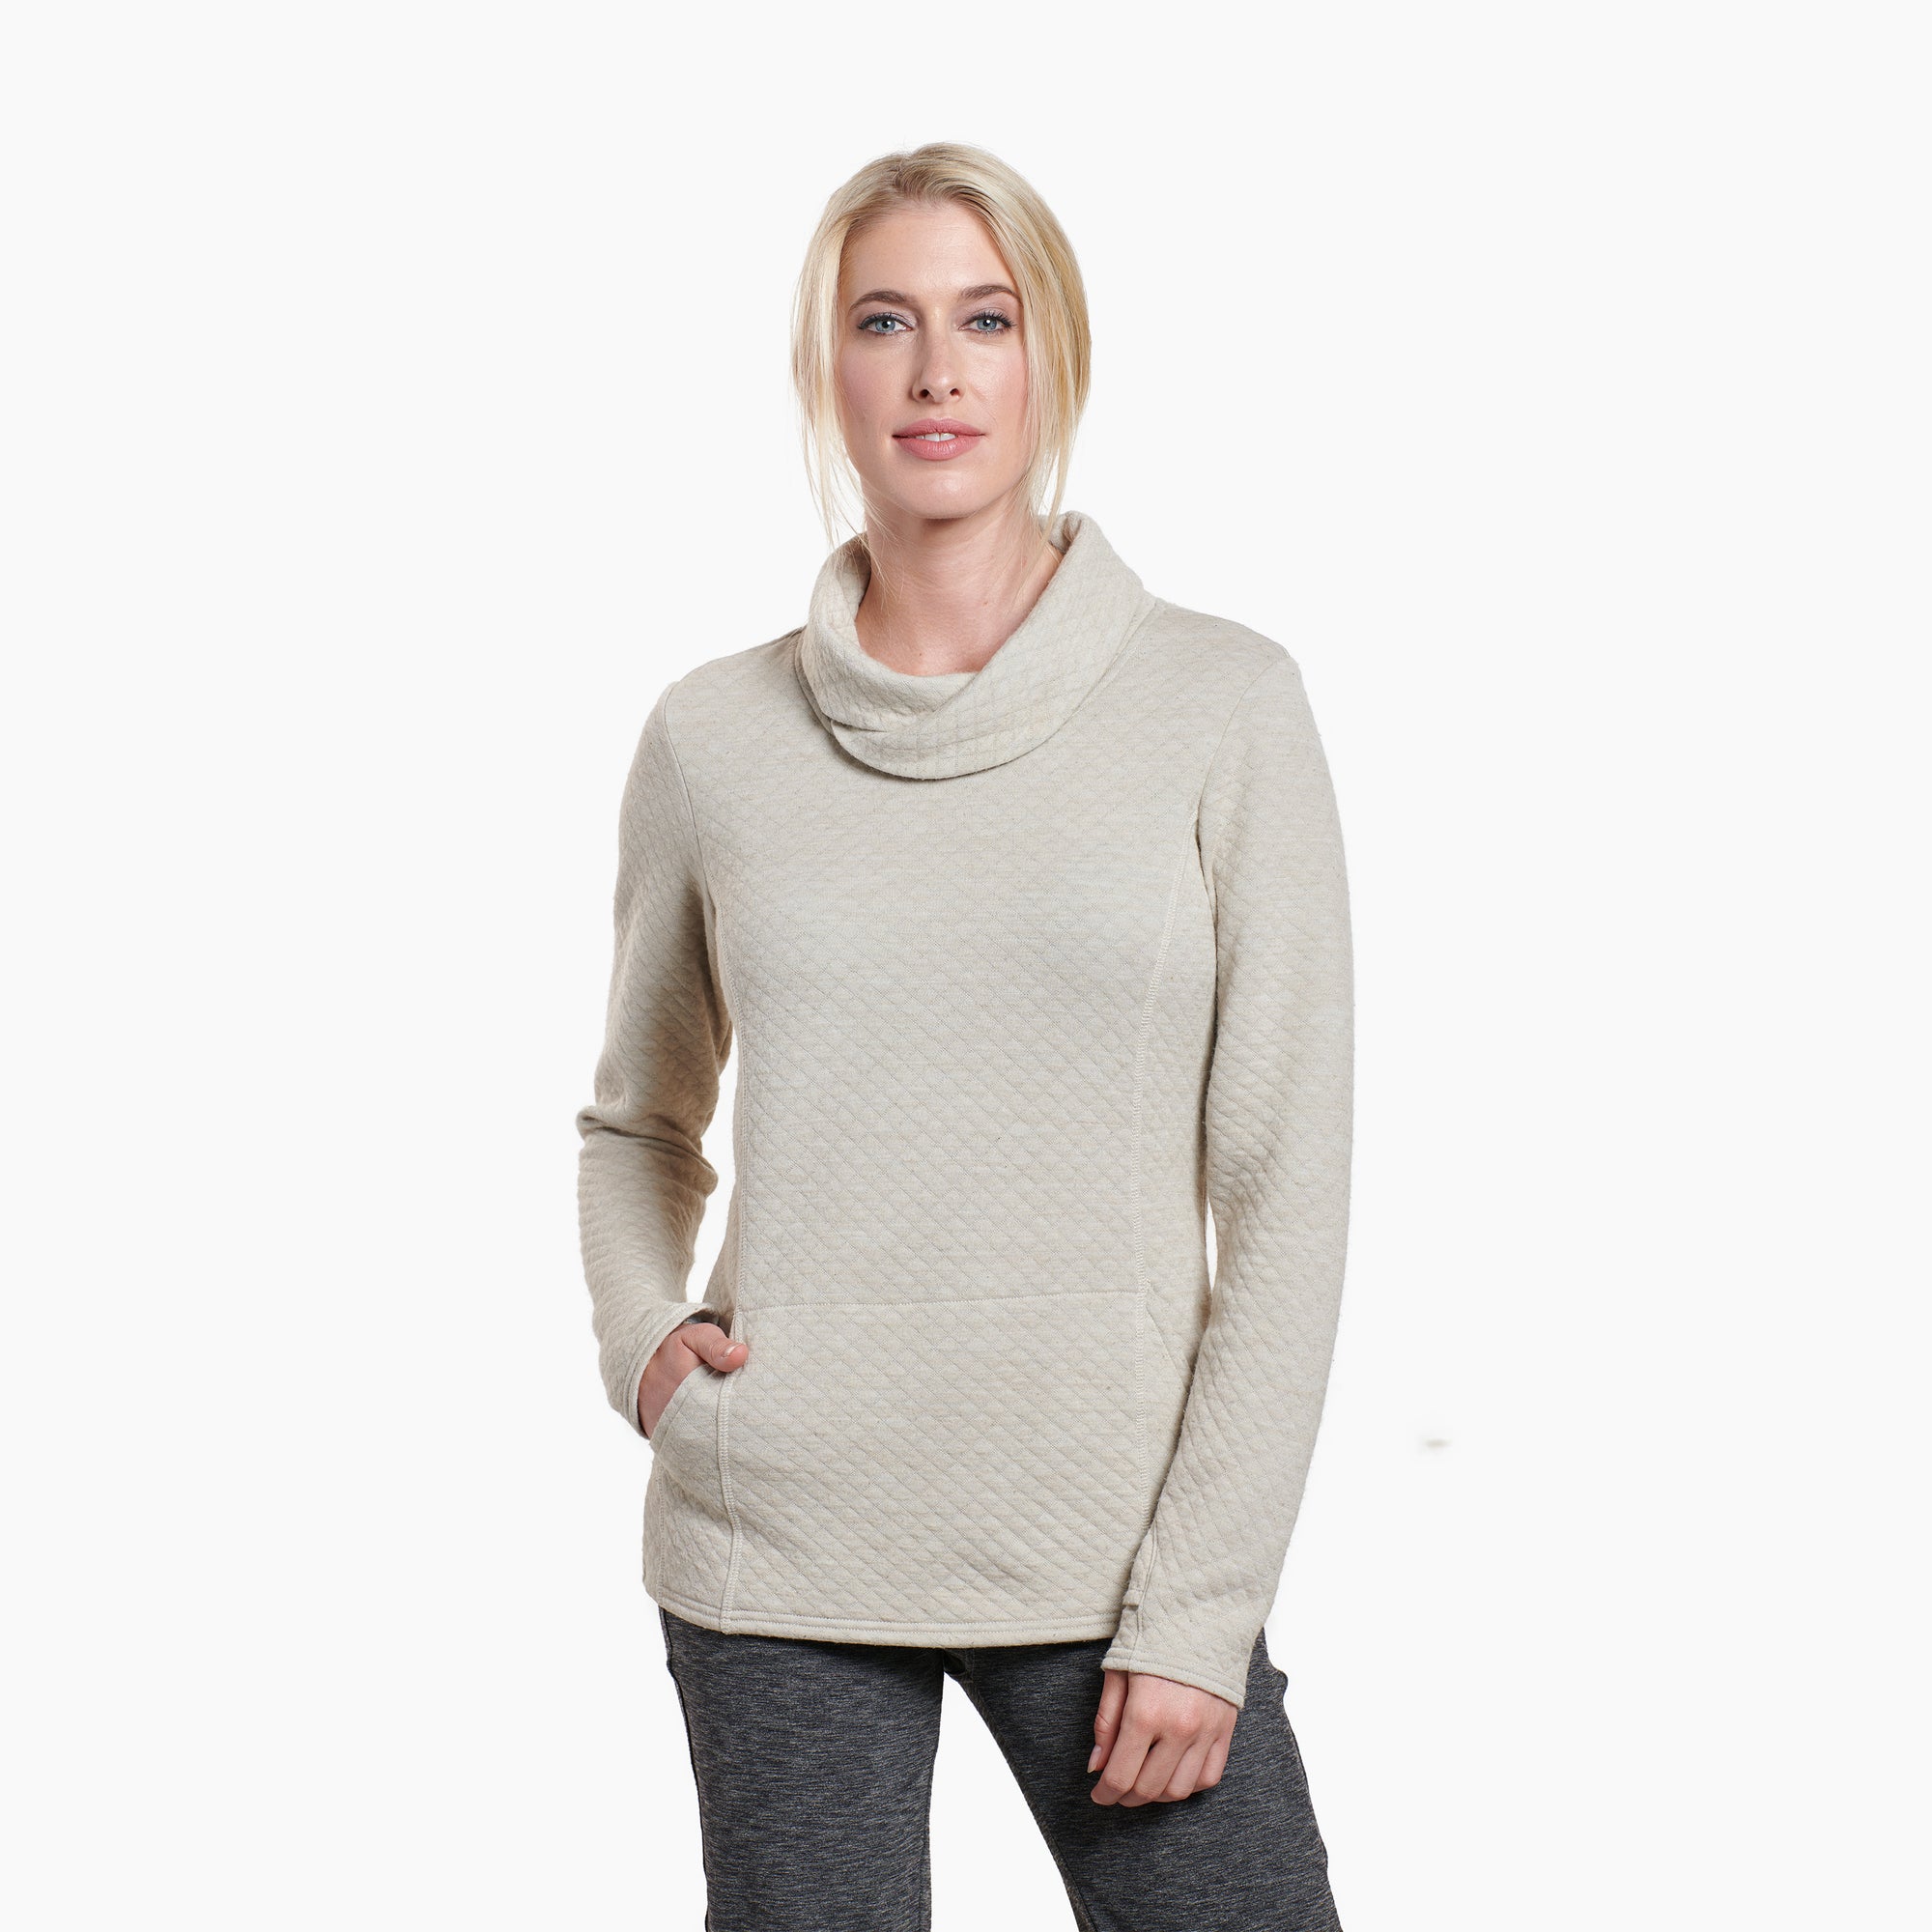 KuhlSienna Sweater - Womens